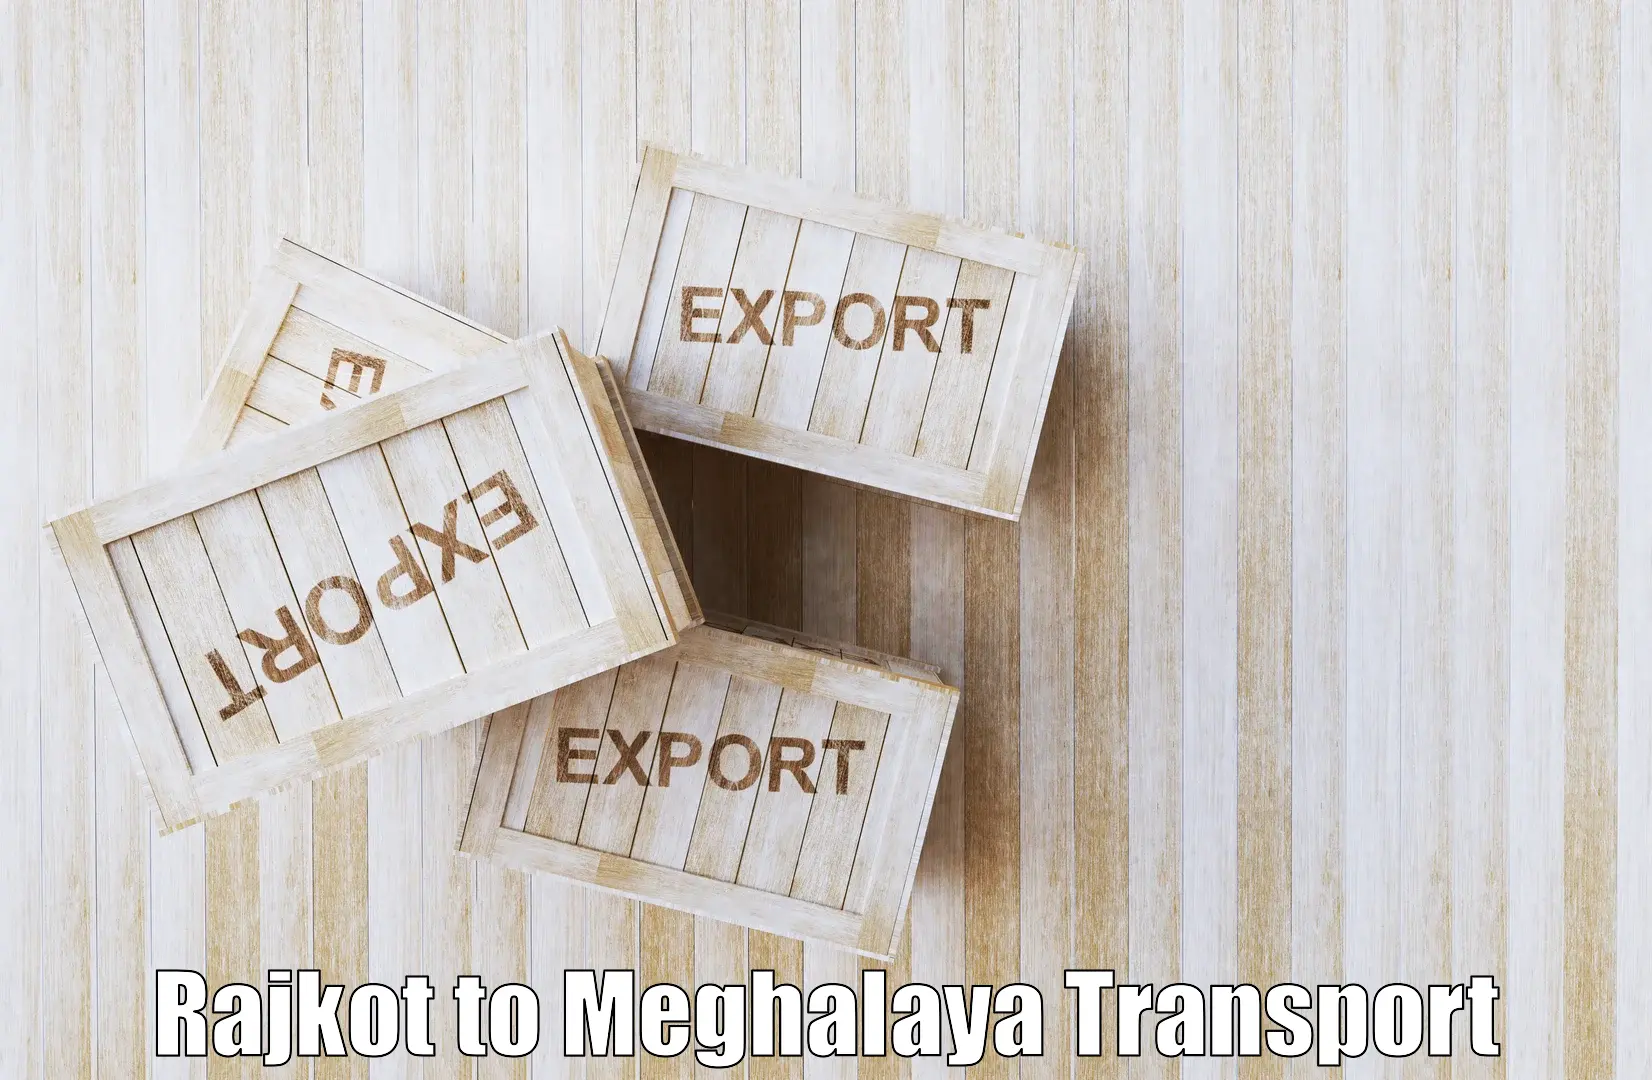 Daily transport service Rajkot to Tikrikilla